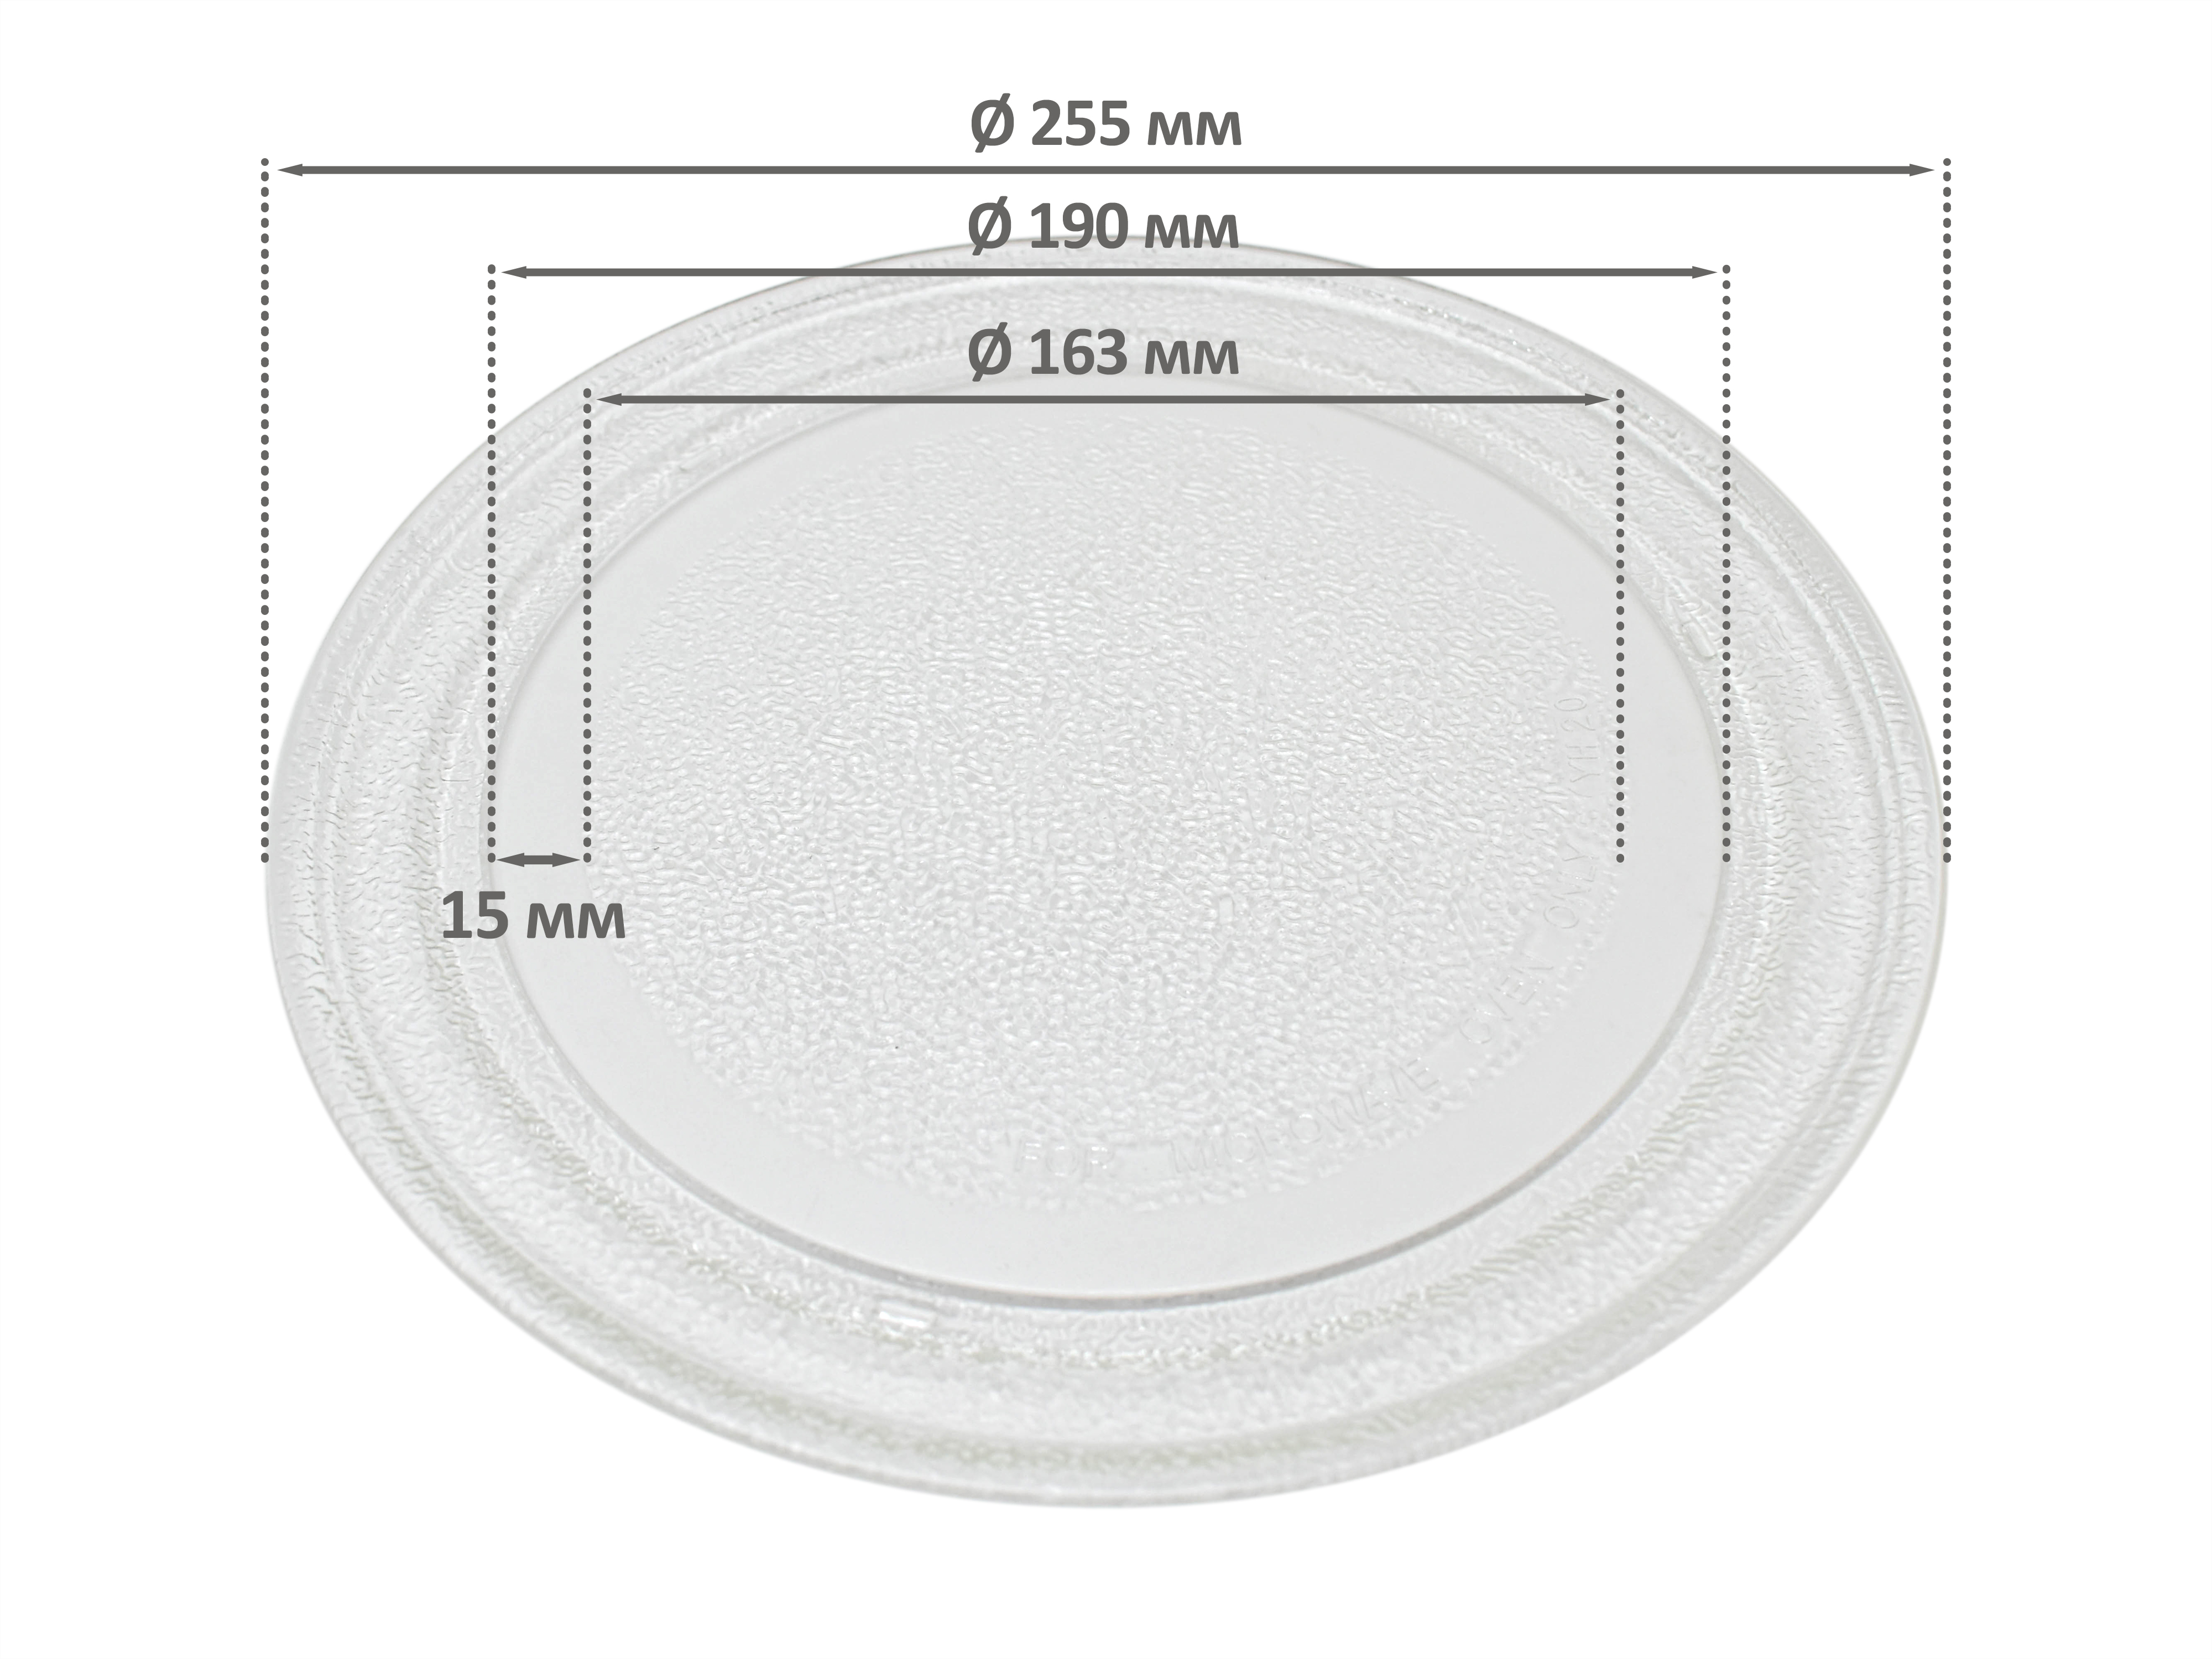 Тарелка для СВЧ для СВЧ микроволновой печи EKPARTS ER255BK тарелка для микроволновой печи 324 мм с креплениями под коплер